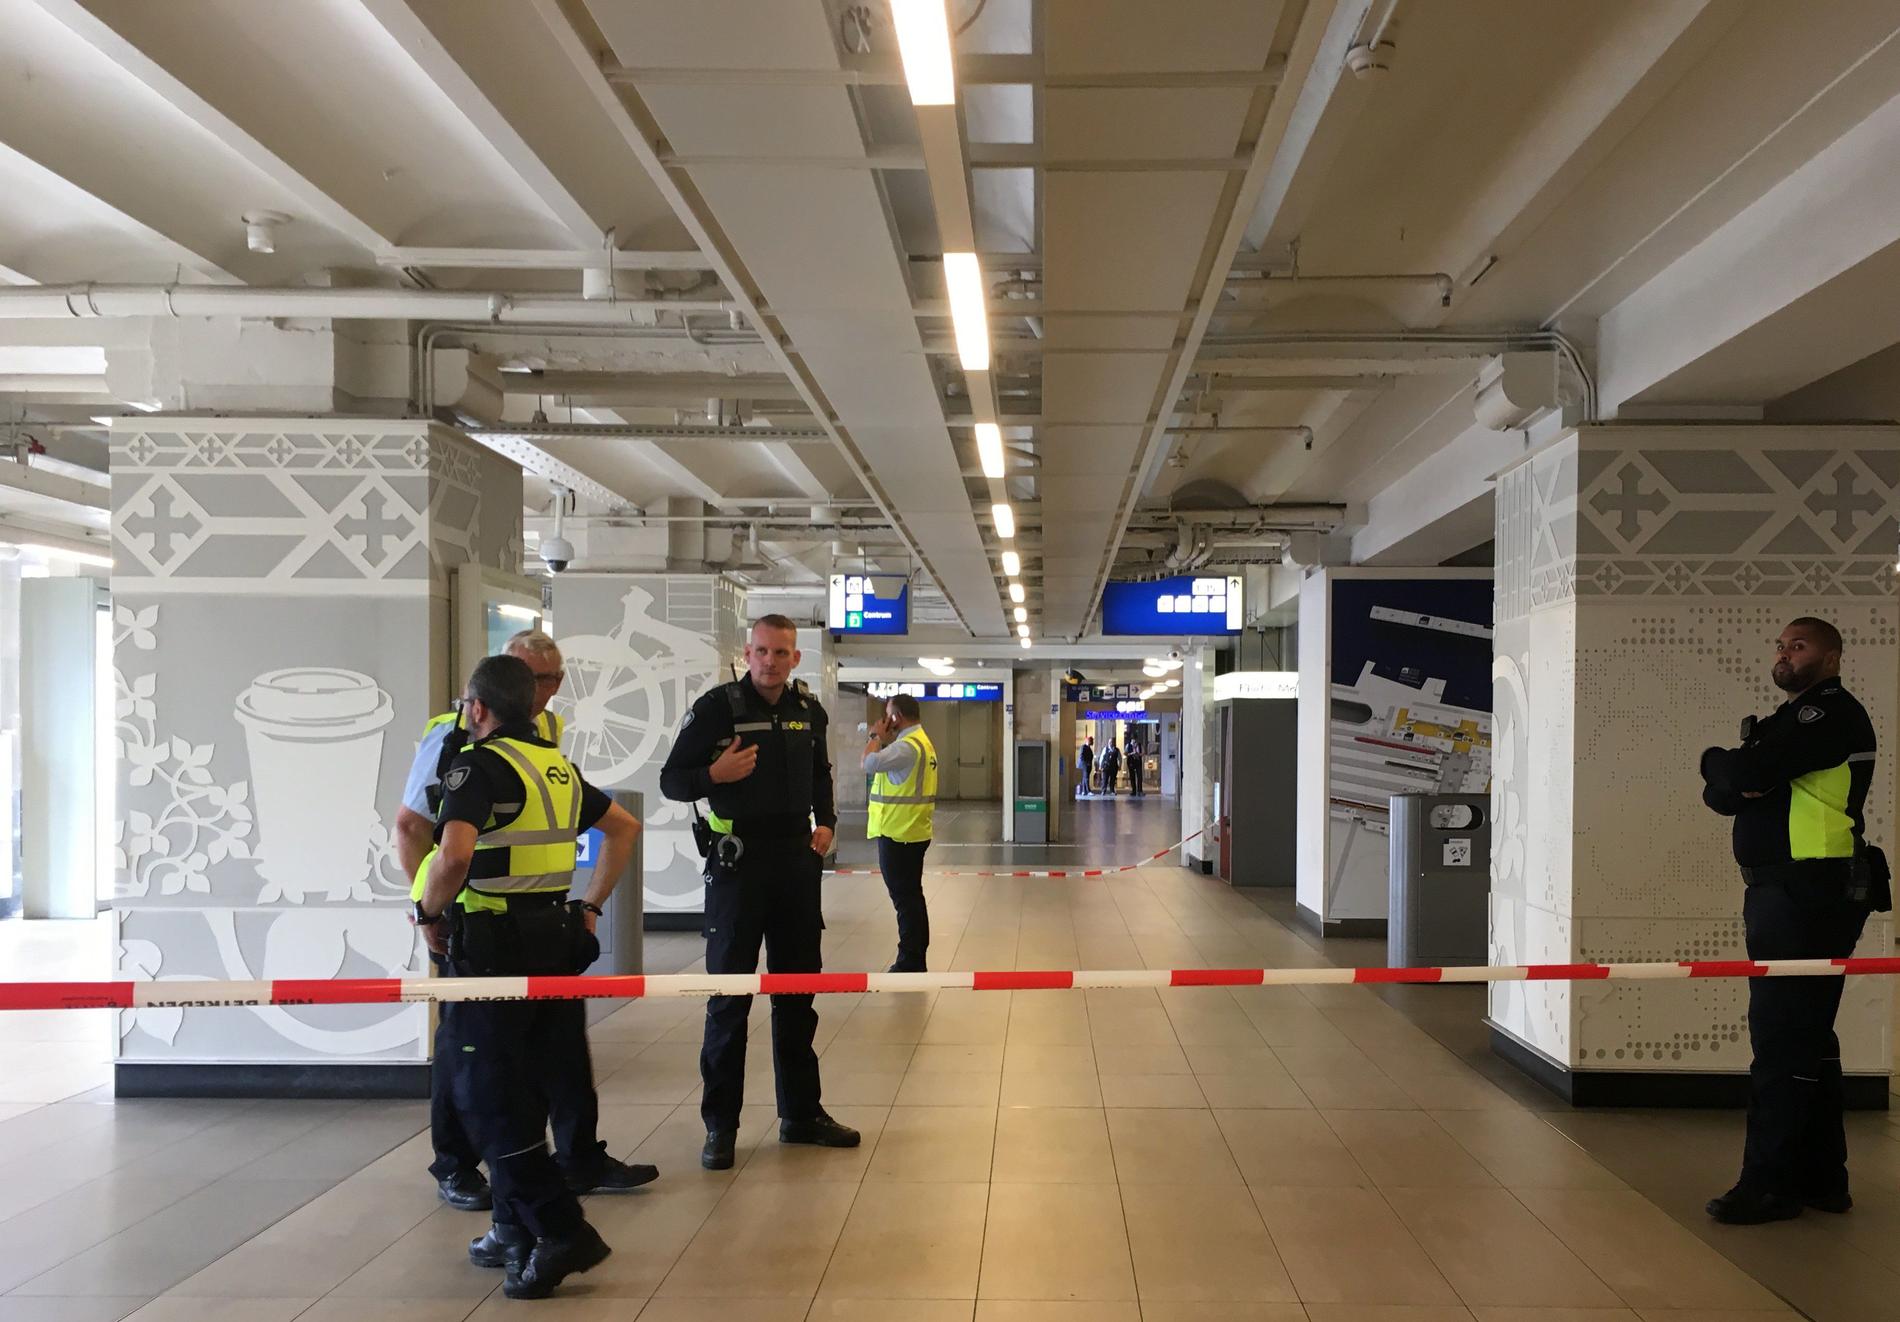 Amsterdams tågstation avspärrad efter knivattack.